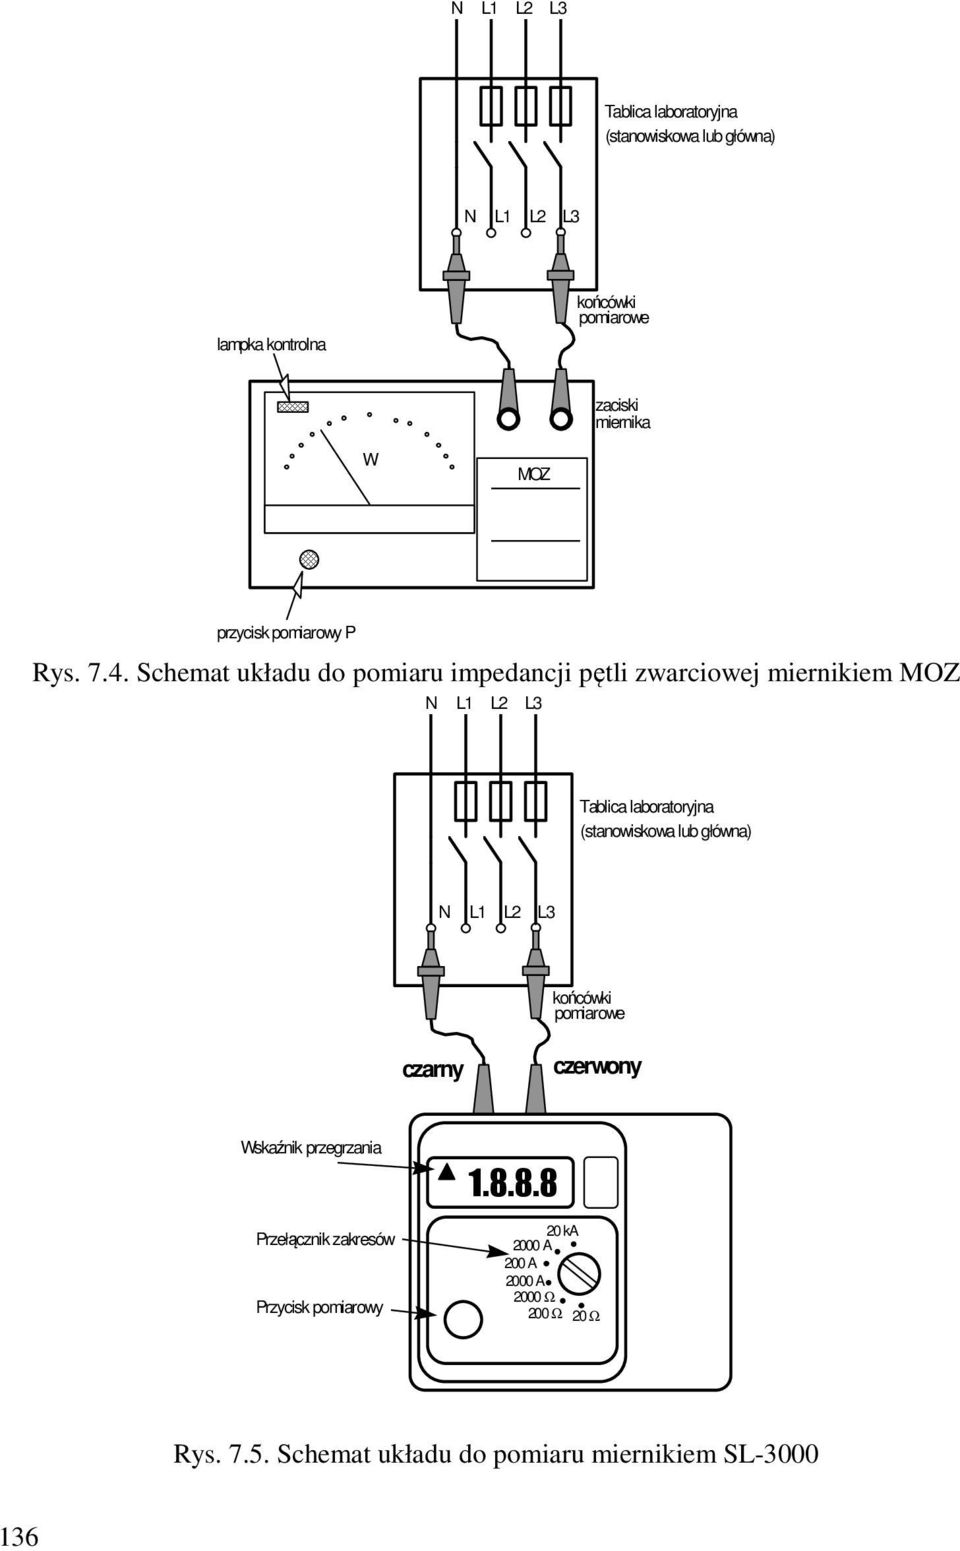 Schemat układu do pomiaru impedancji pętli zwarciowej miernikiem MOZ N L1 L2 L3 Tablica laboratoryjna (stanowiskowa lub